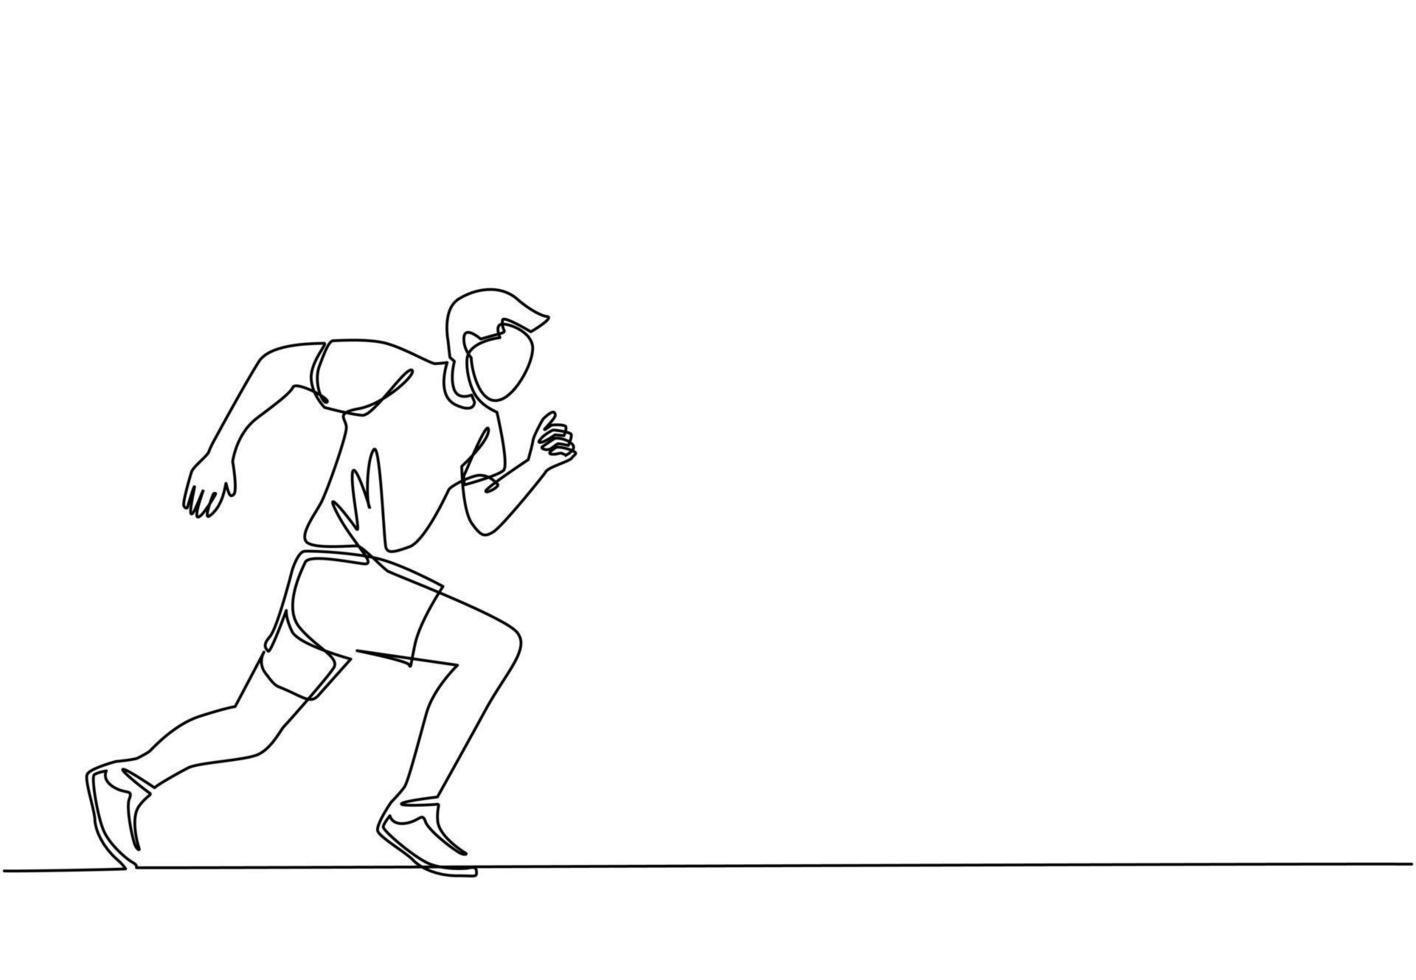 singolo disegno a linea continua giovane uomo sportivo runner focus per correre veloce in pista. concetto di sport di attività sanitaria. torneo internazionale di corsa. illustrazione grafica vettoriale di un disegno di linea